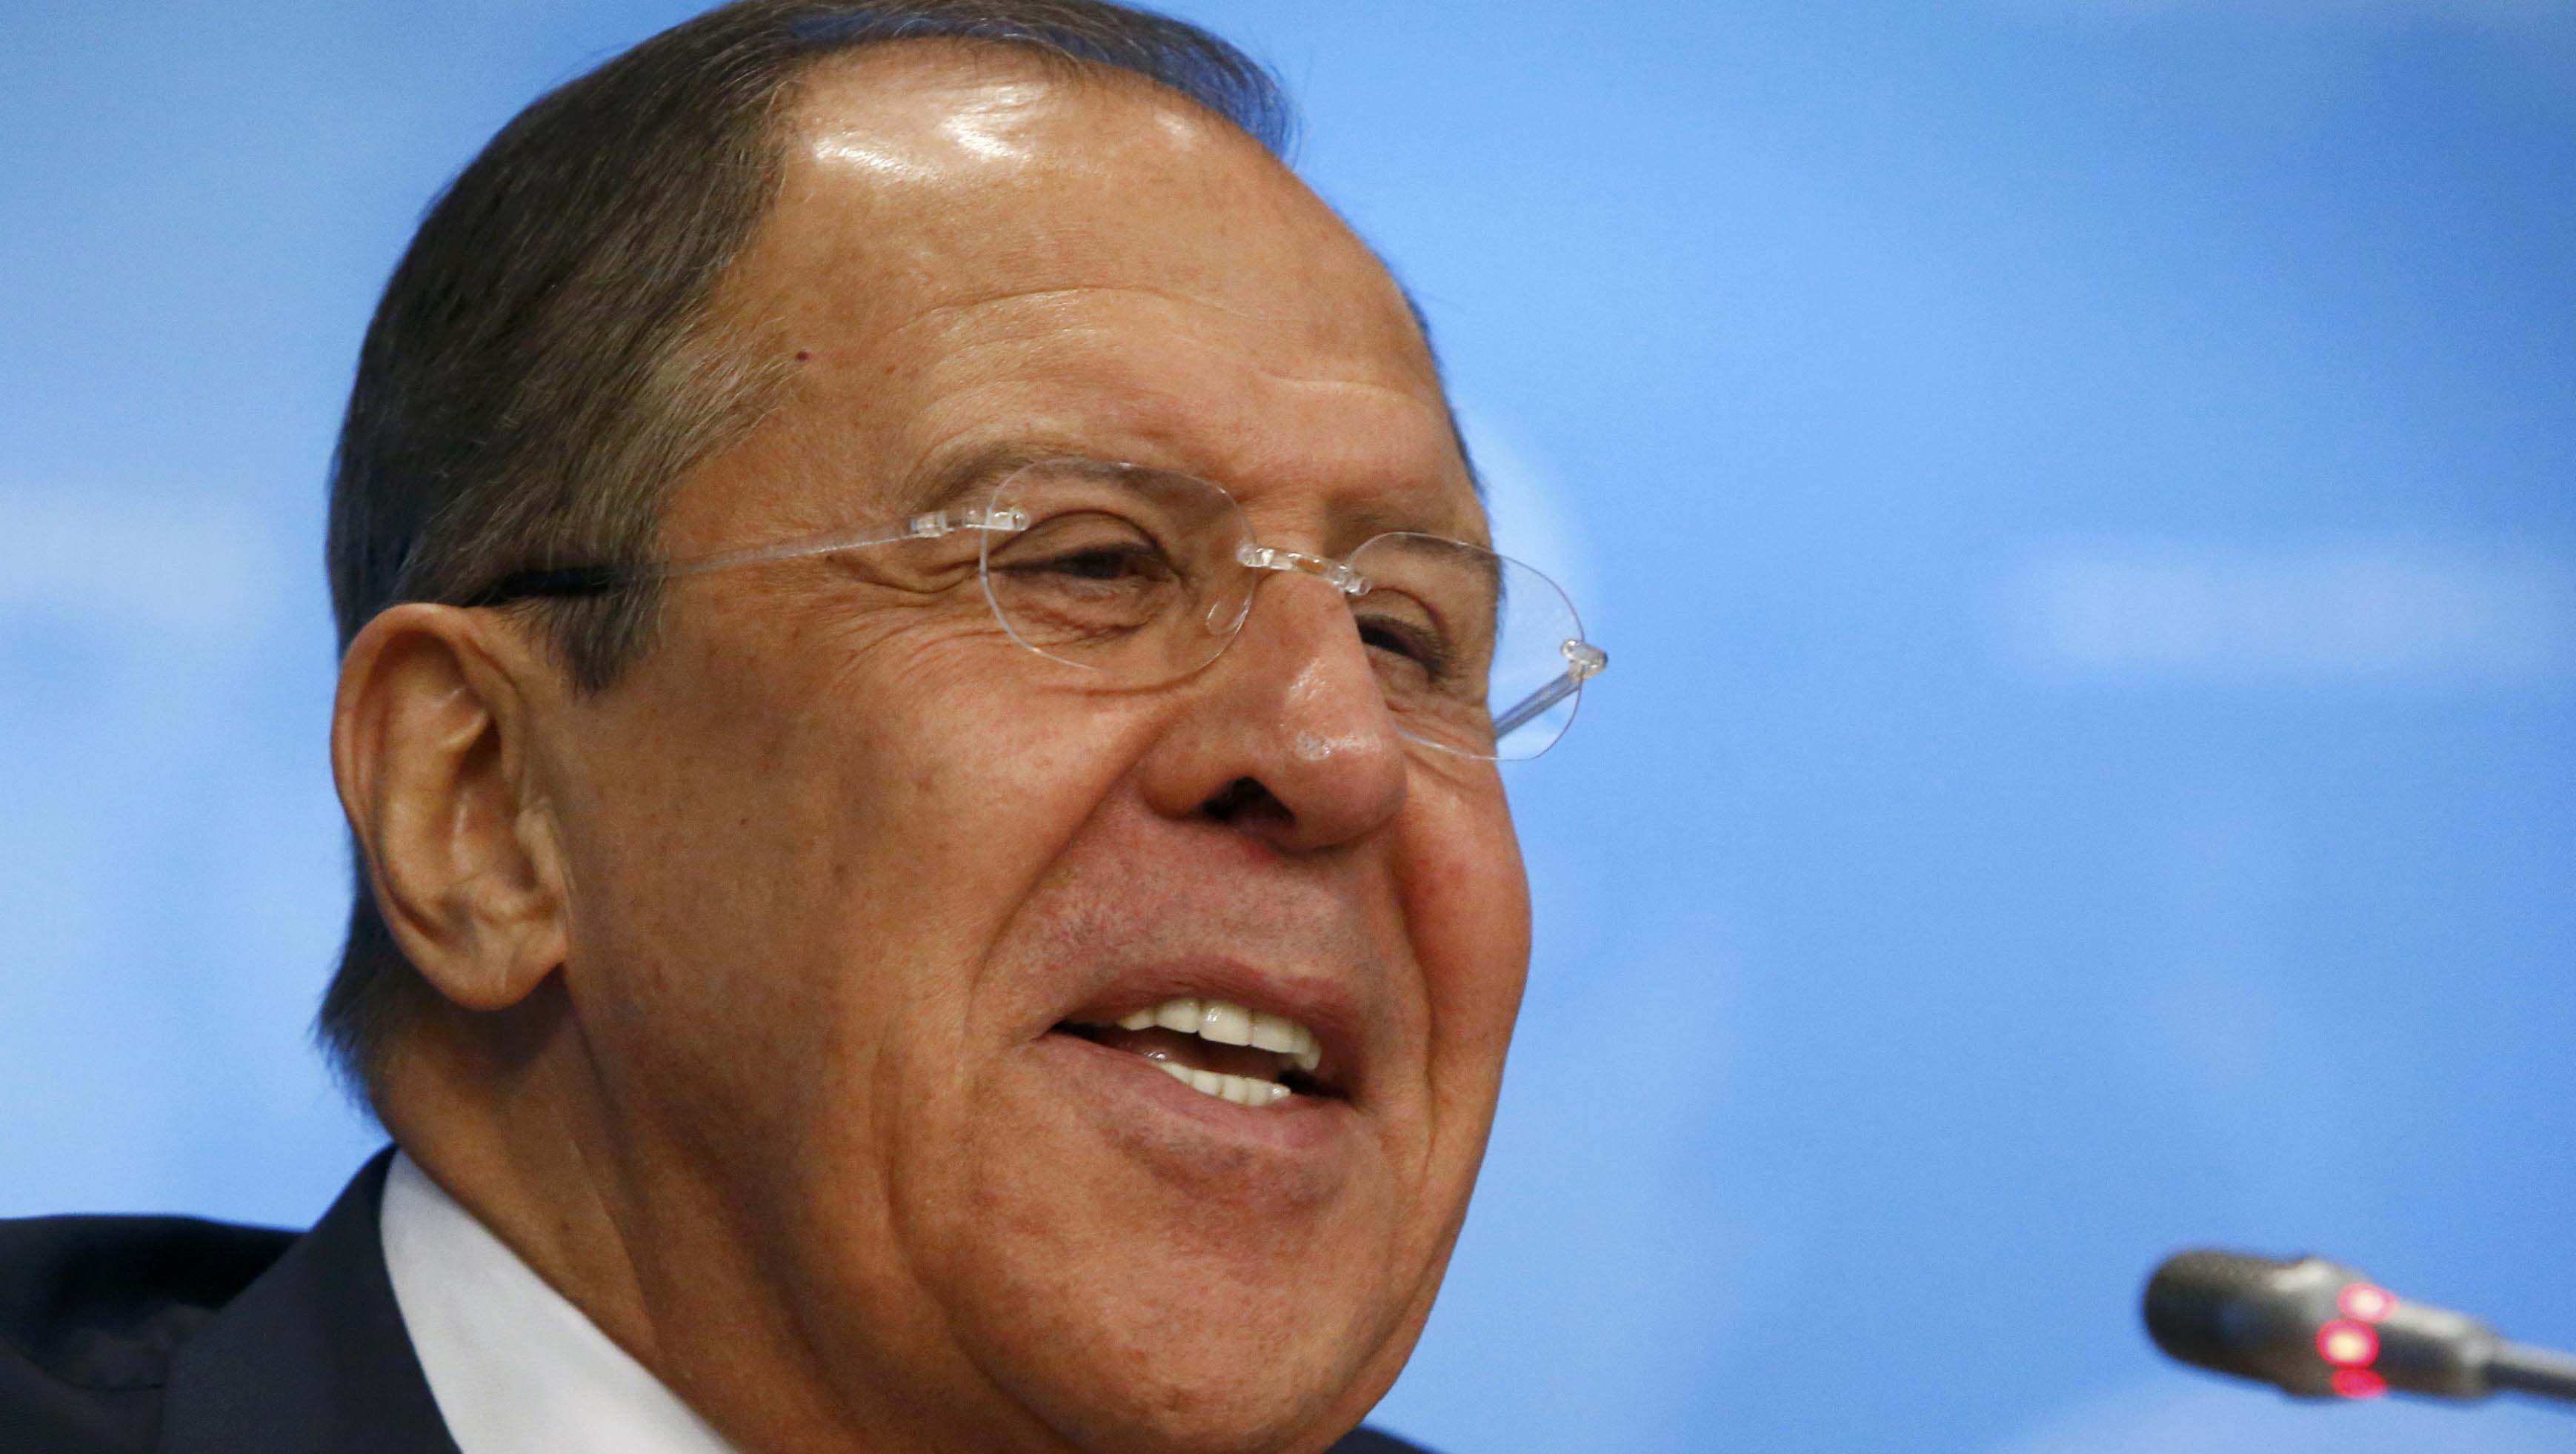 Lavrov expresó confianza en que el diálogo entre ambos se intensificará.